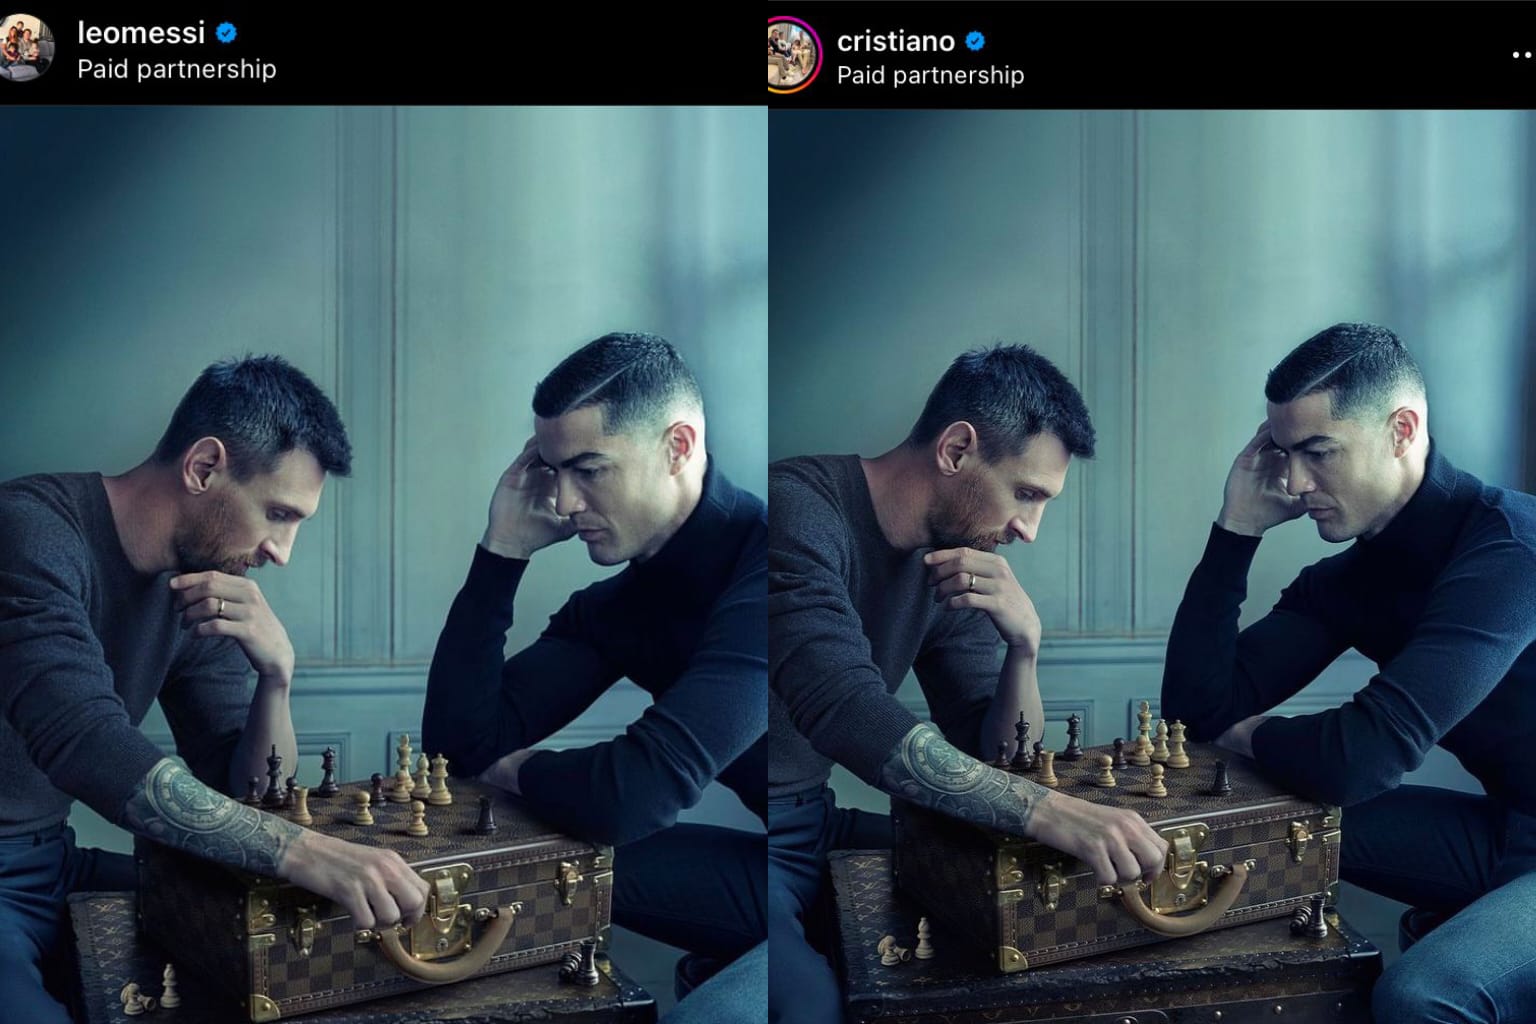 Lionel Messi & Cristiano Ronaldo Star in New Louis Vuitton Chess